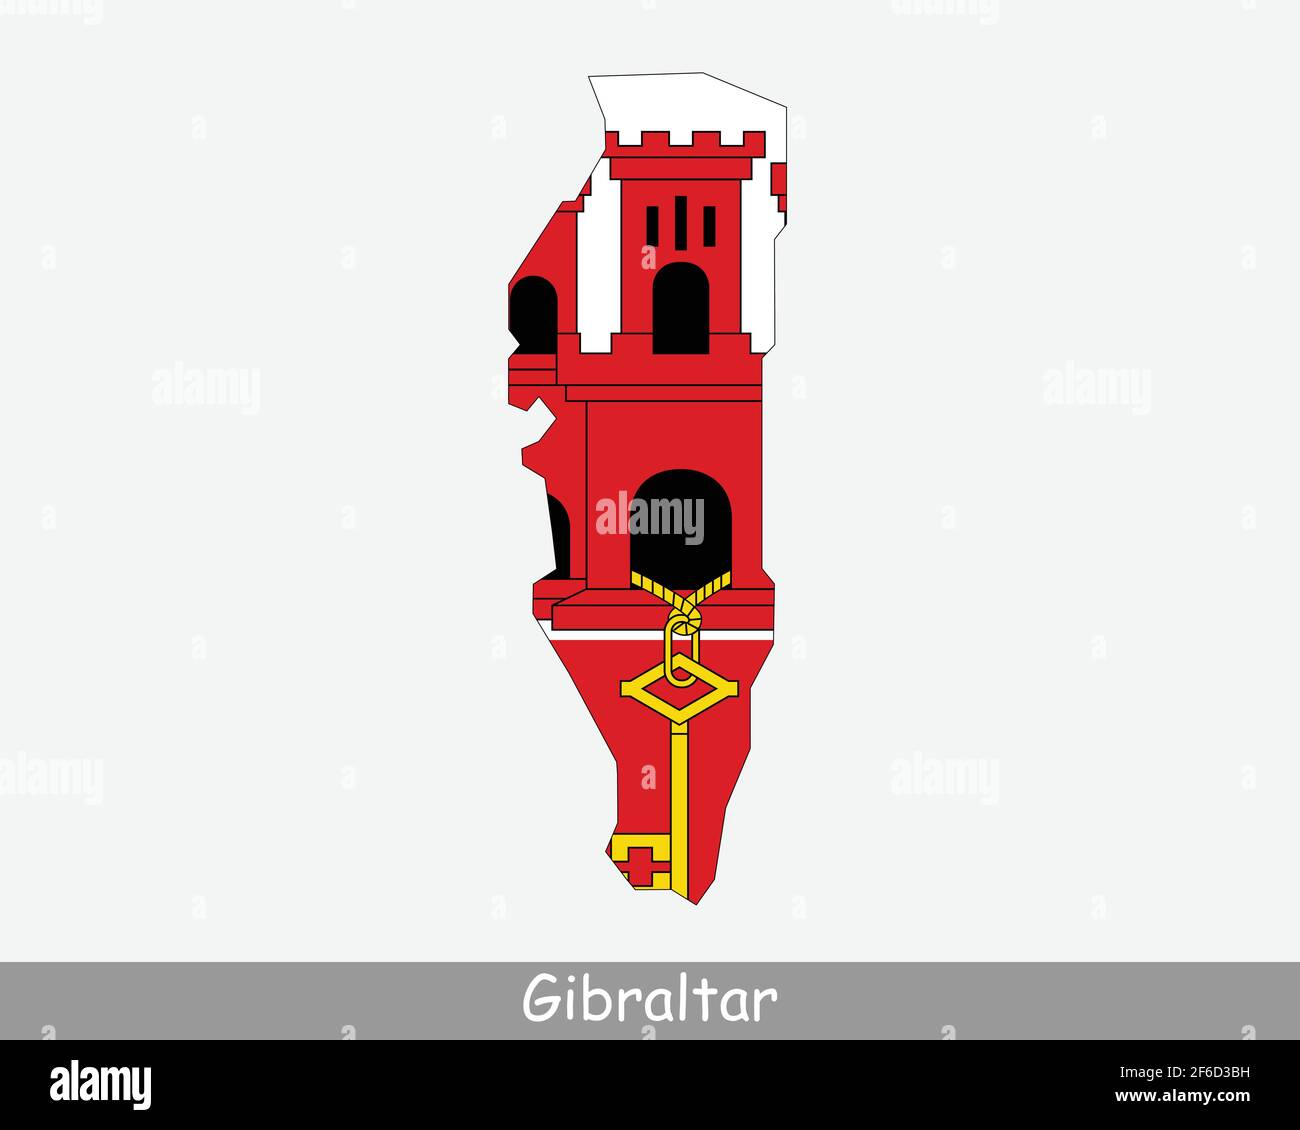 Gibraltar Karte Flagge. Karte von Gibraltar mit isolierter Flagge auf weißem Hintergrund. British Overseas Territory. Vereinigtes Königreich, Vereinigtes Königreich. Vektorgrafik. Stock Vektor